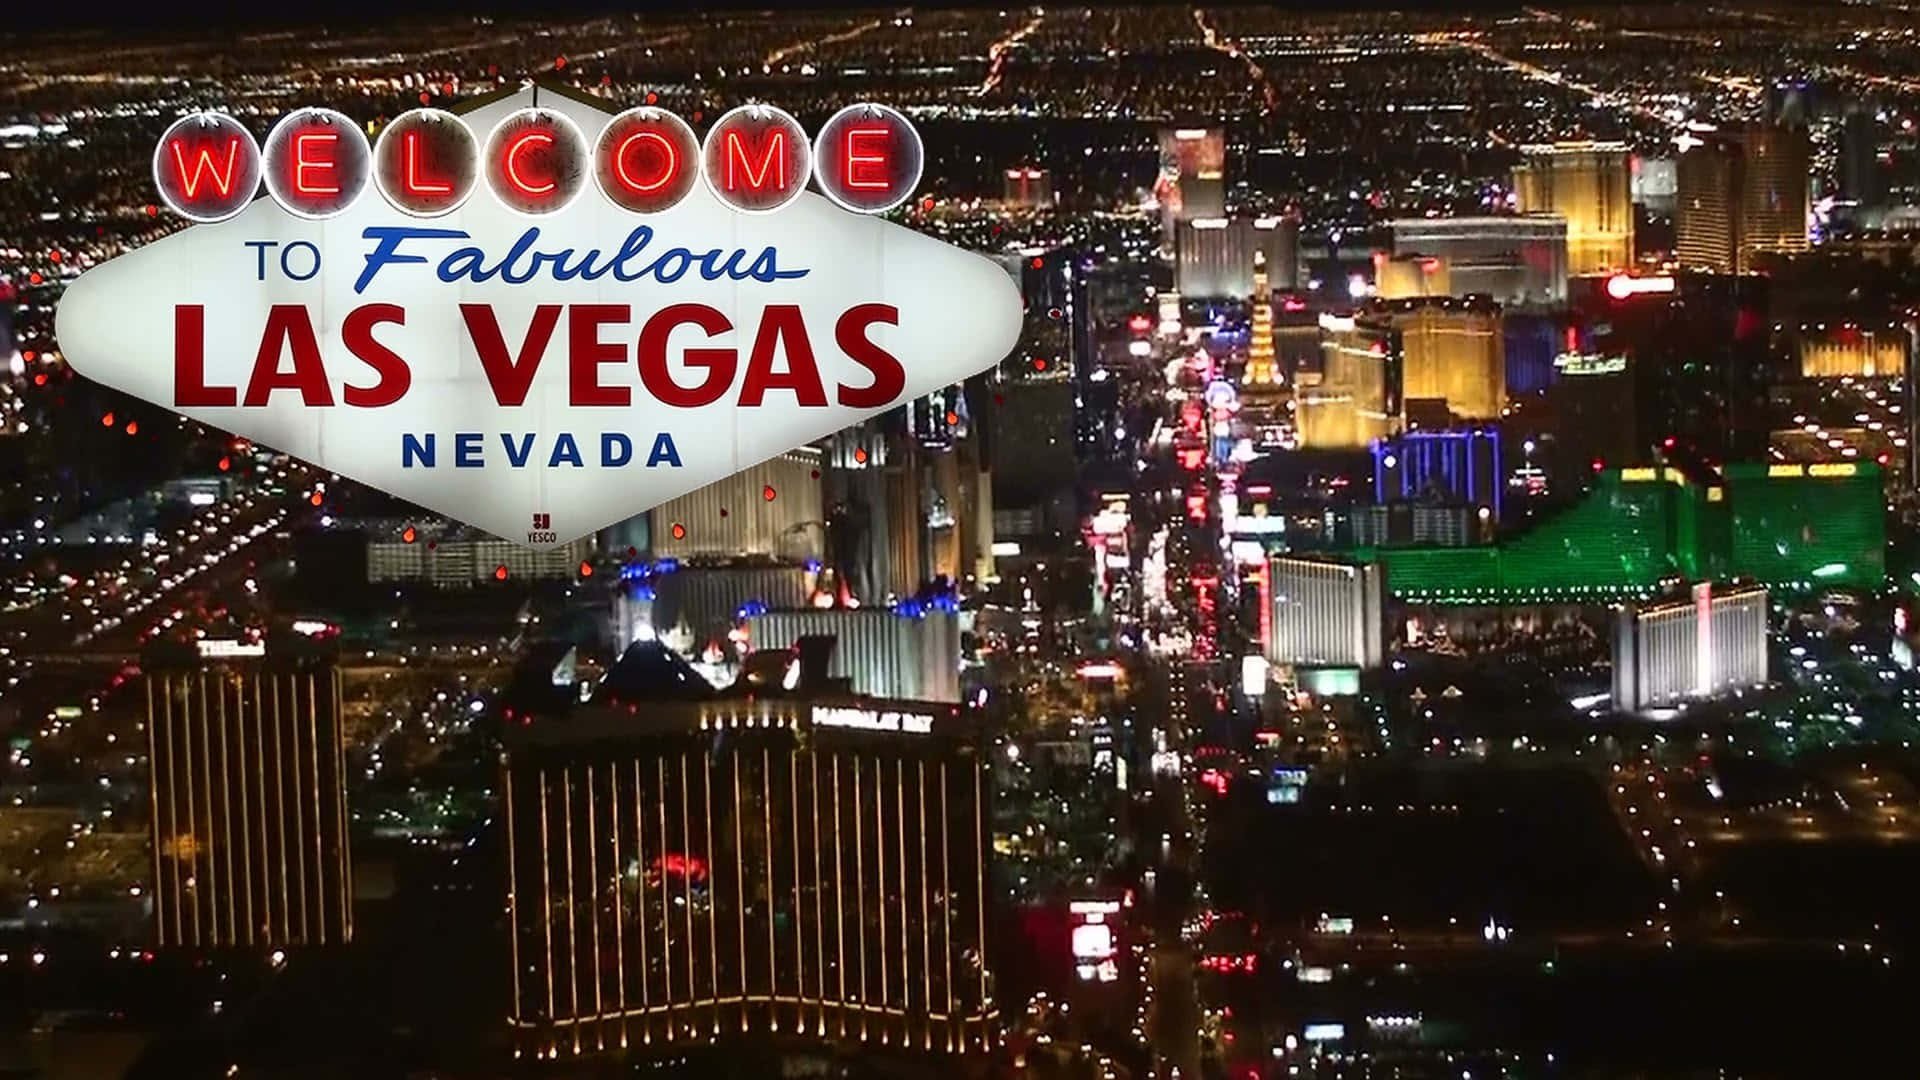 Fabulous Las Vegas Hd Iphone Theme Wallpaper